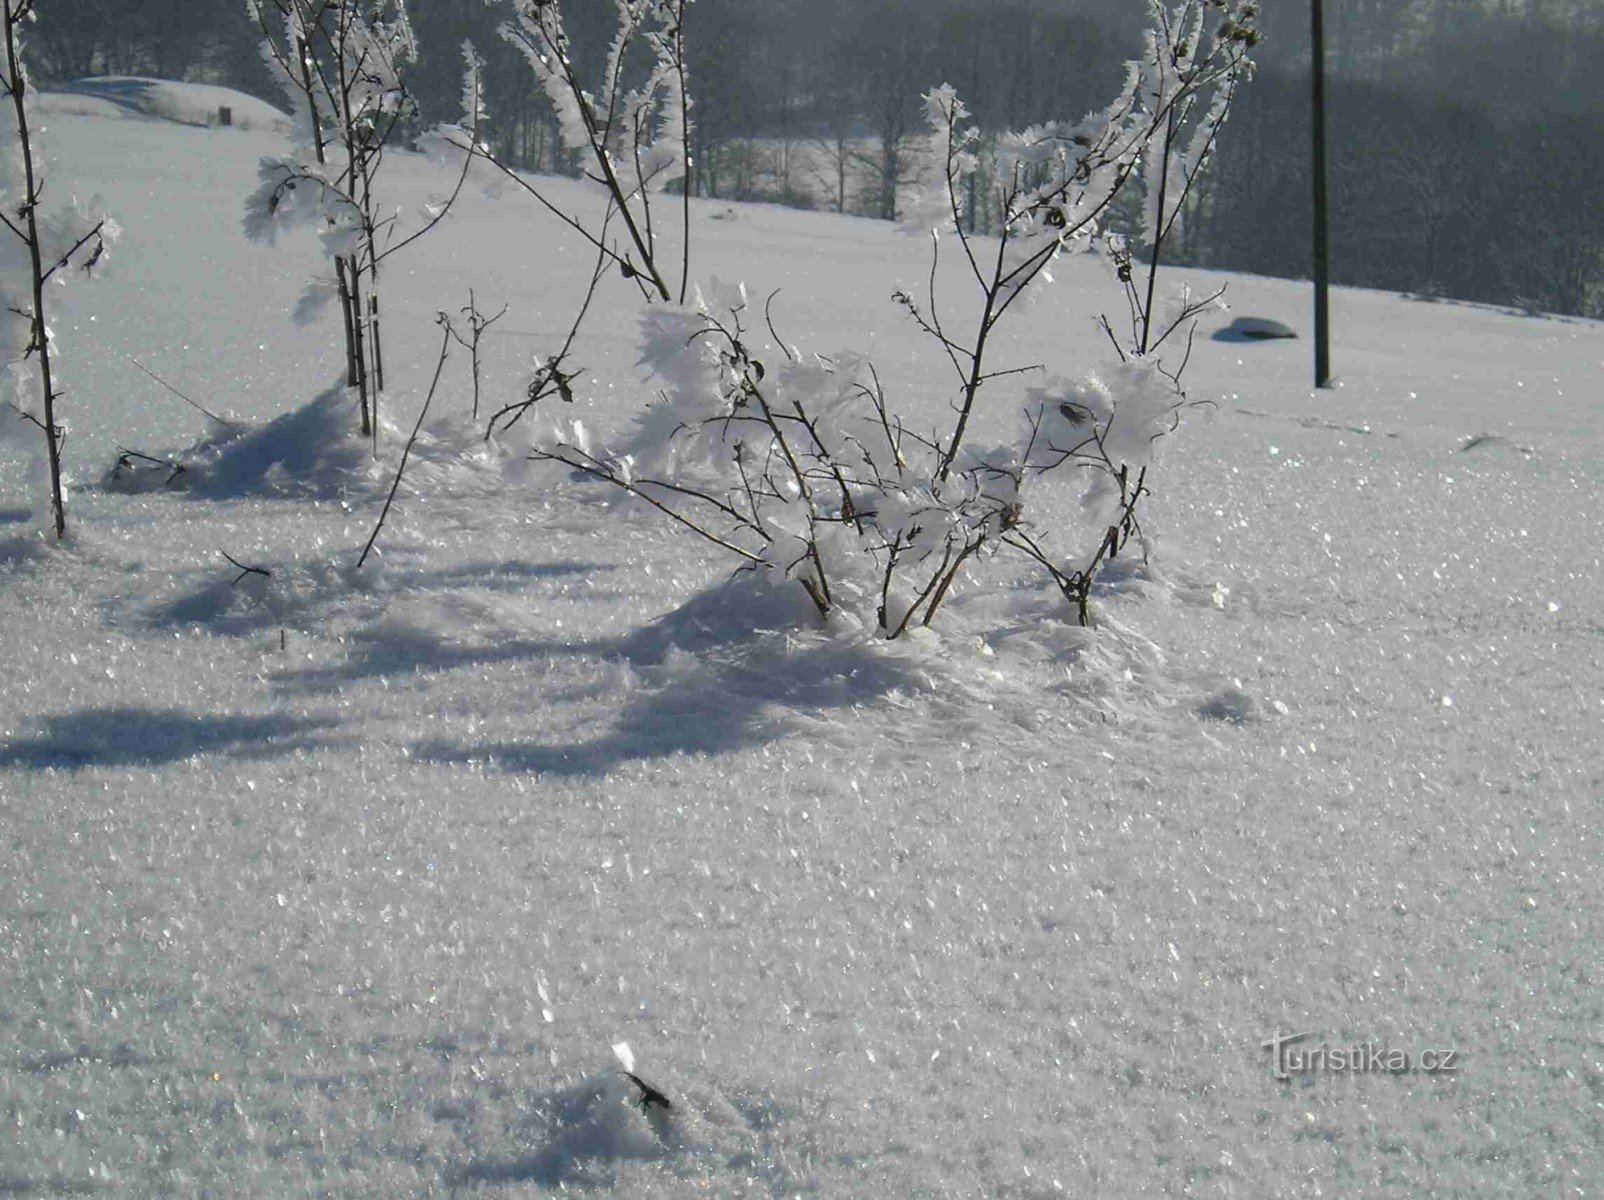 Górno leszna en hiver, plus précisément sous la colline de Wróžno